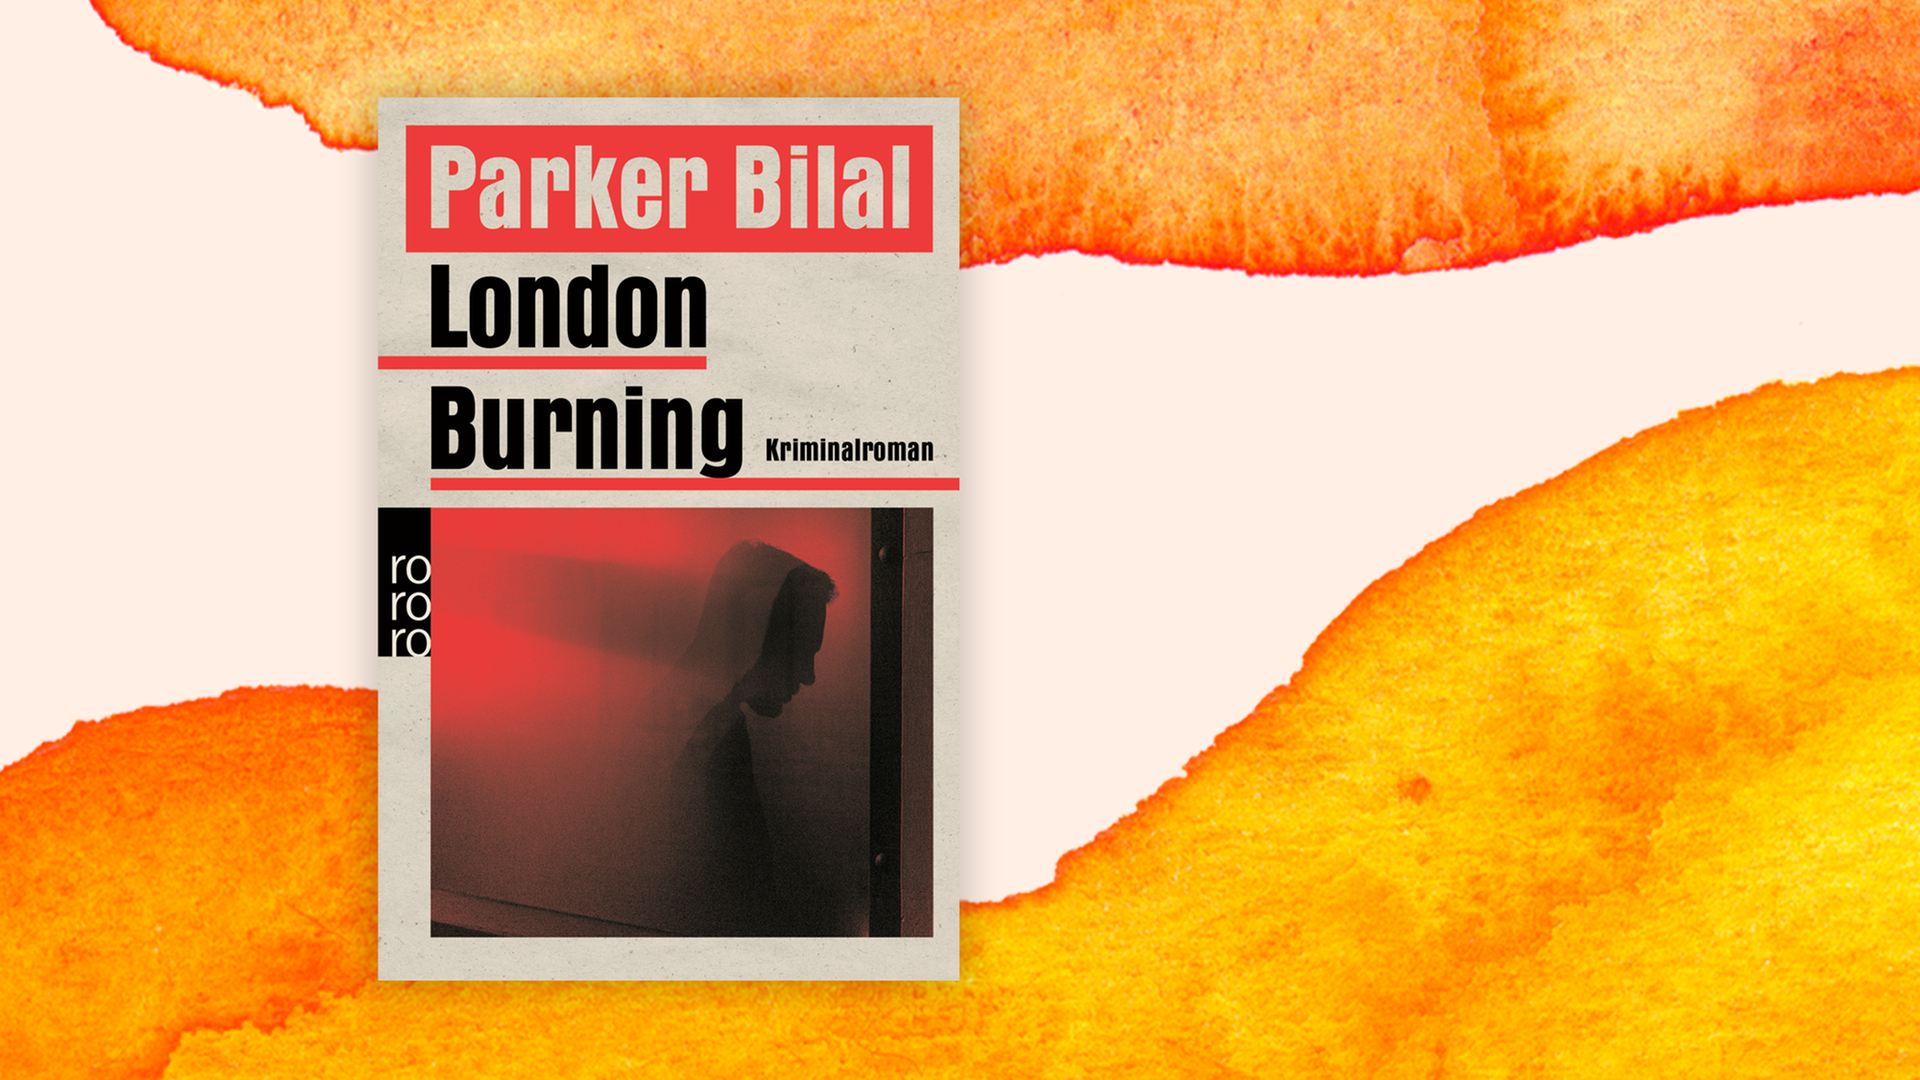 Zu sehen ist der Titel des Buches "London burning" von Parker Bilal.